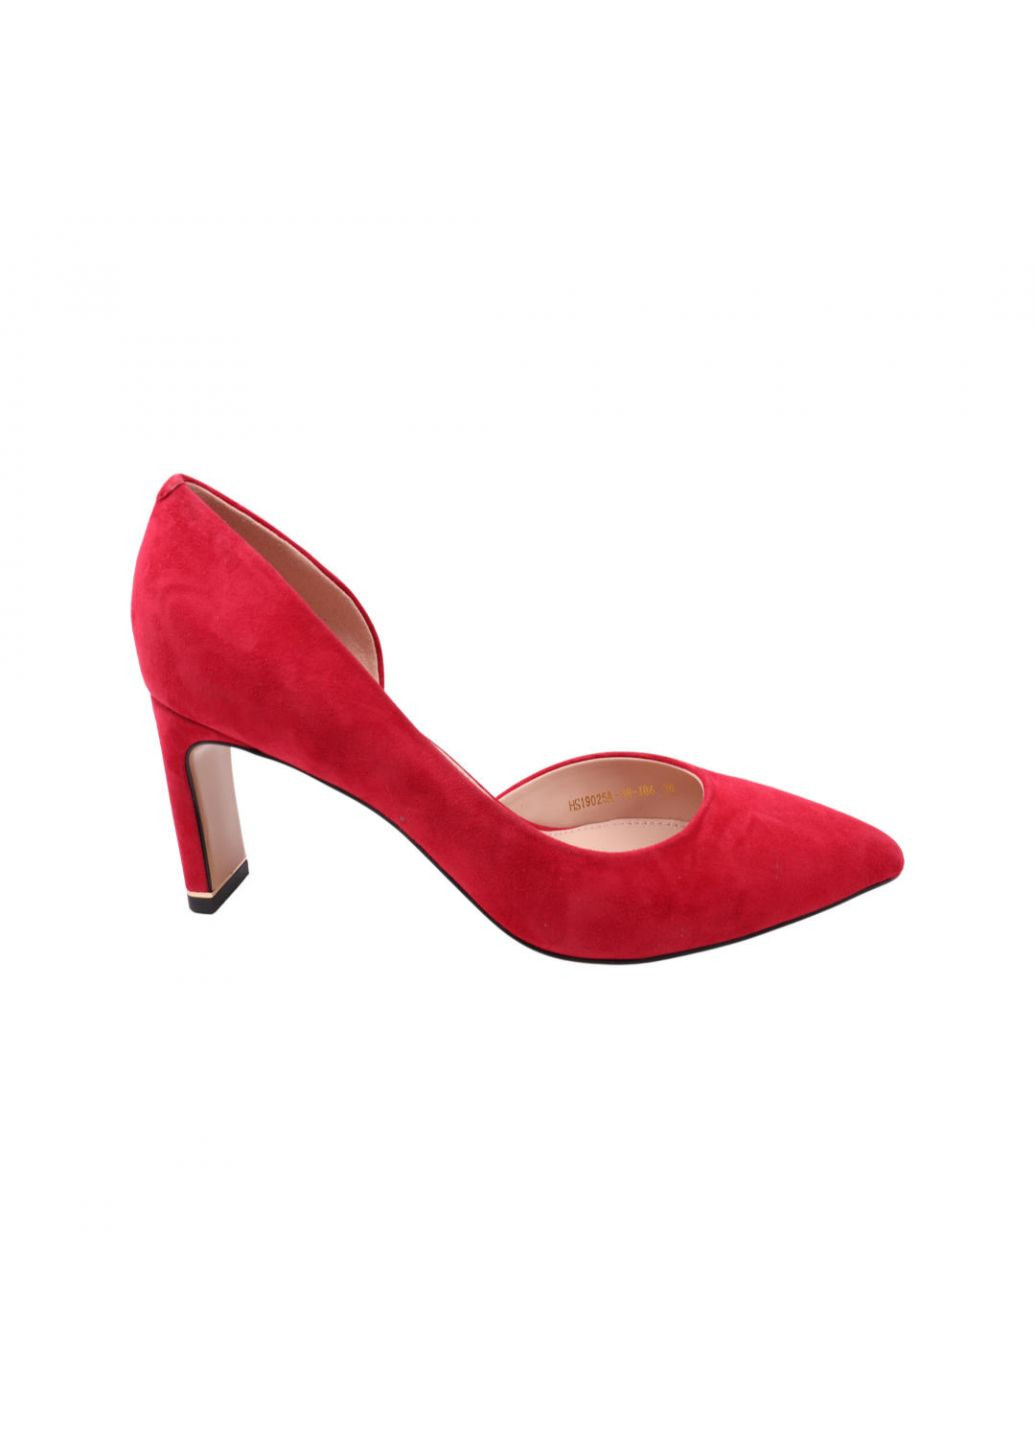 Туфлі жіночі червоні натуральна замша Anemone 202-22dt (257439513)